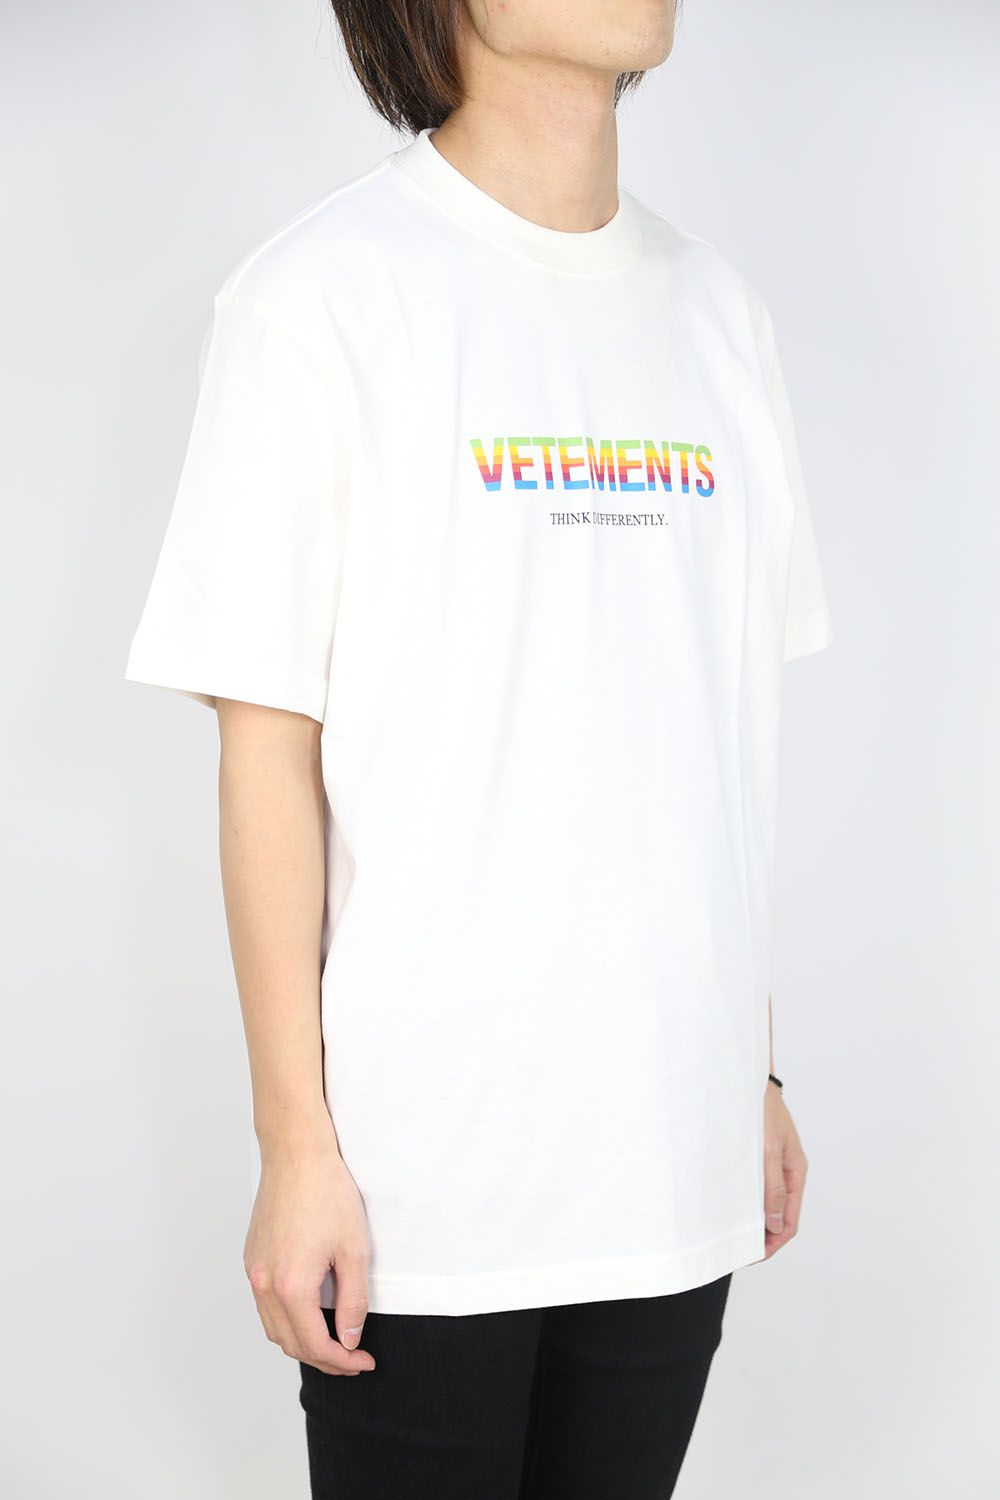 VETEMENTS ヴェトモン Tシャツ サイズ:M ブランドロゴ クルーネック 半袖 Logo Limited Edition T-shirt 21SS ホワイト 白 トップス カットソー カジュアル ブランド ストリート シンプル ワンポイント【メンズ】